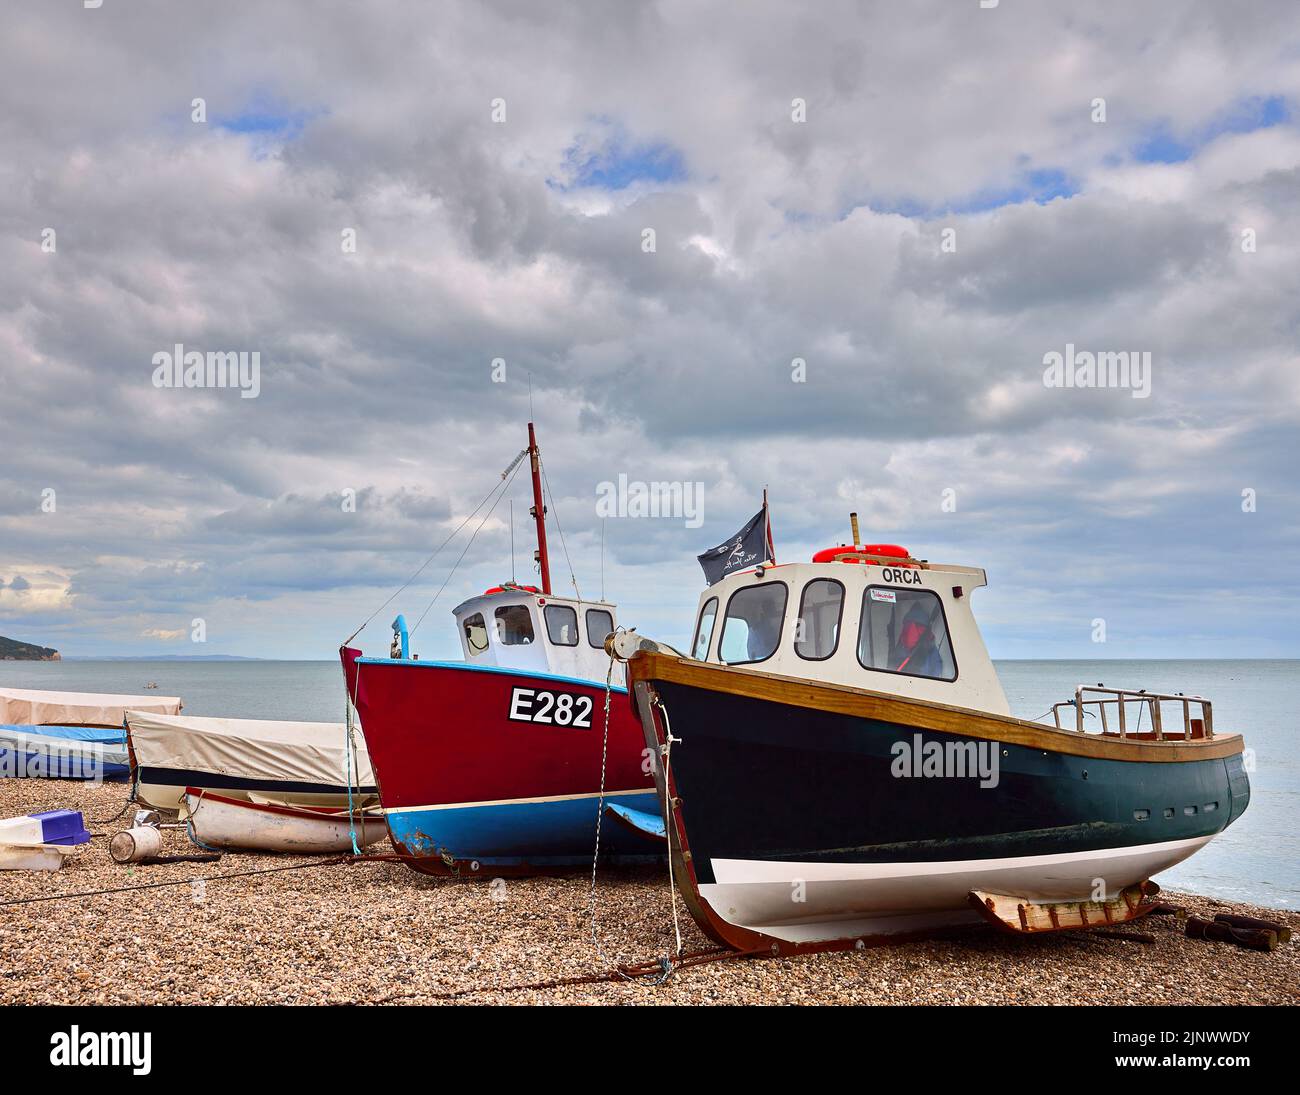 Pequeños barcos de pesca tradicionales se embarcaron en la playa de guijarros pedregosos de Beer, un pequeño pueblo costero de Devon en la costa jurásica Foto de stock